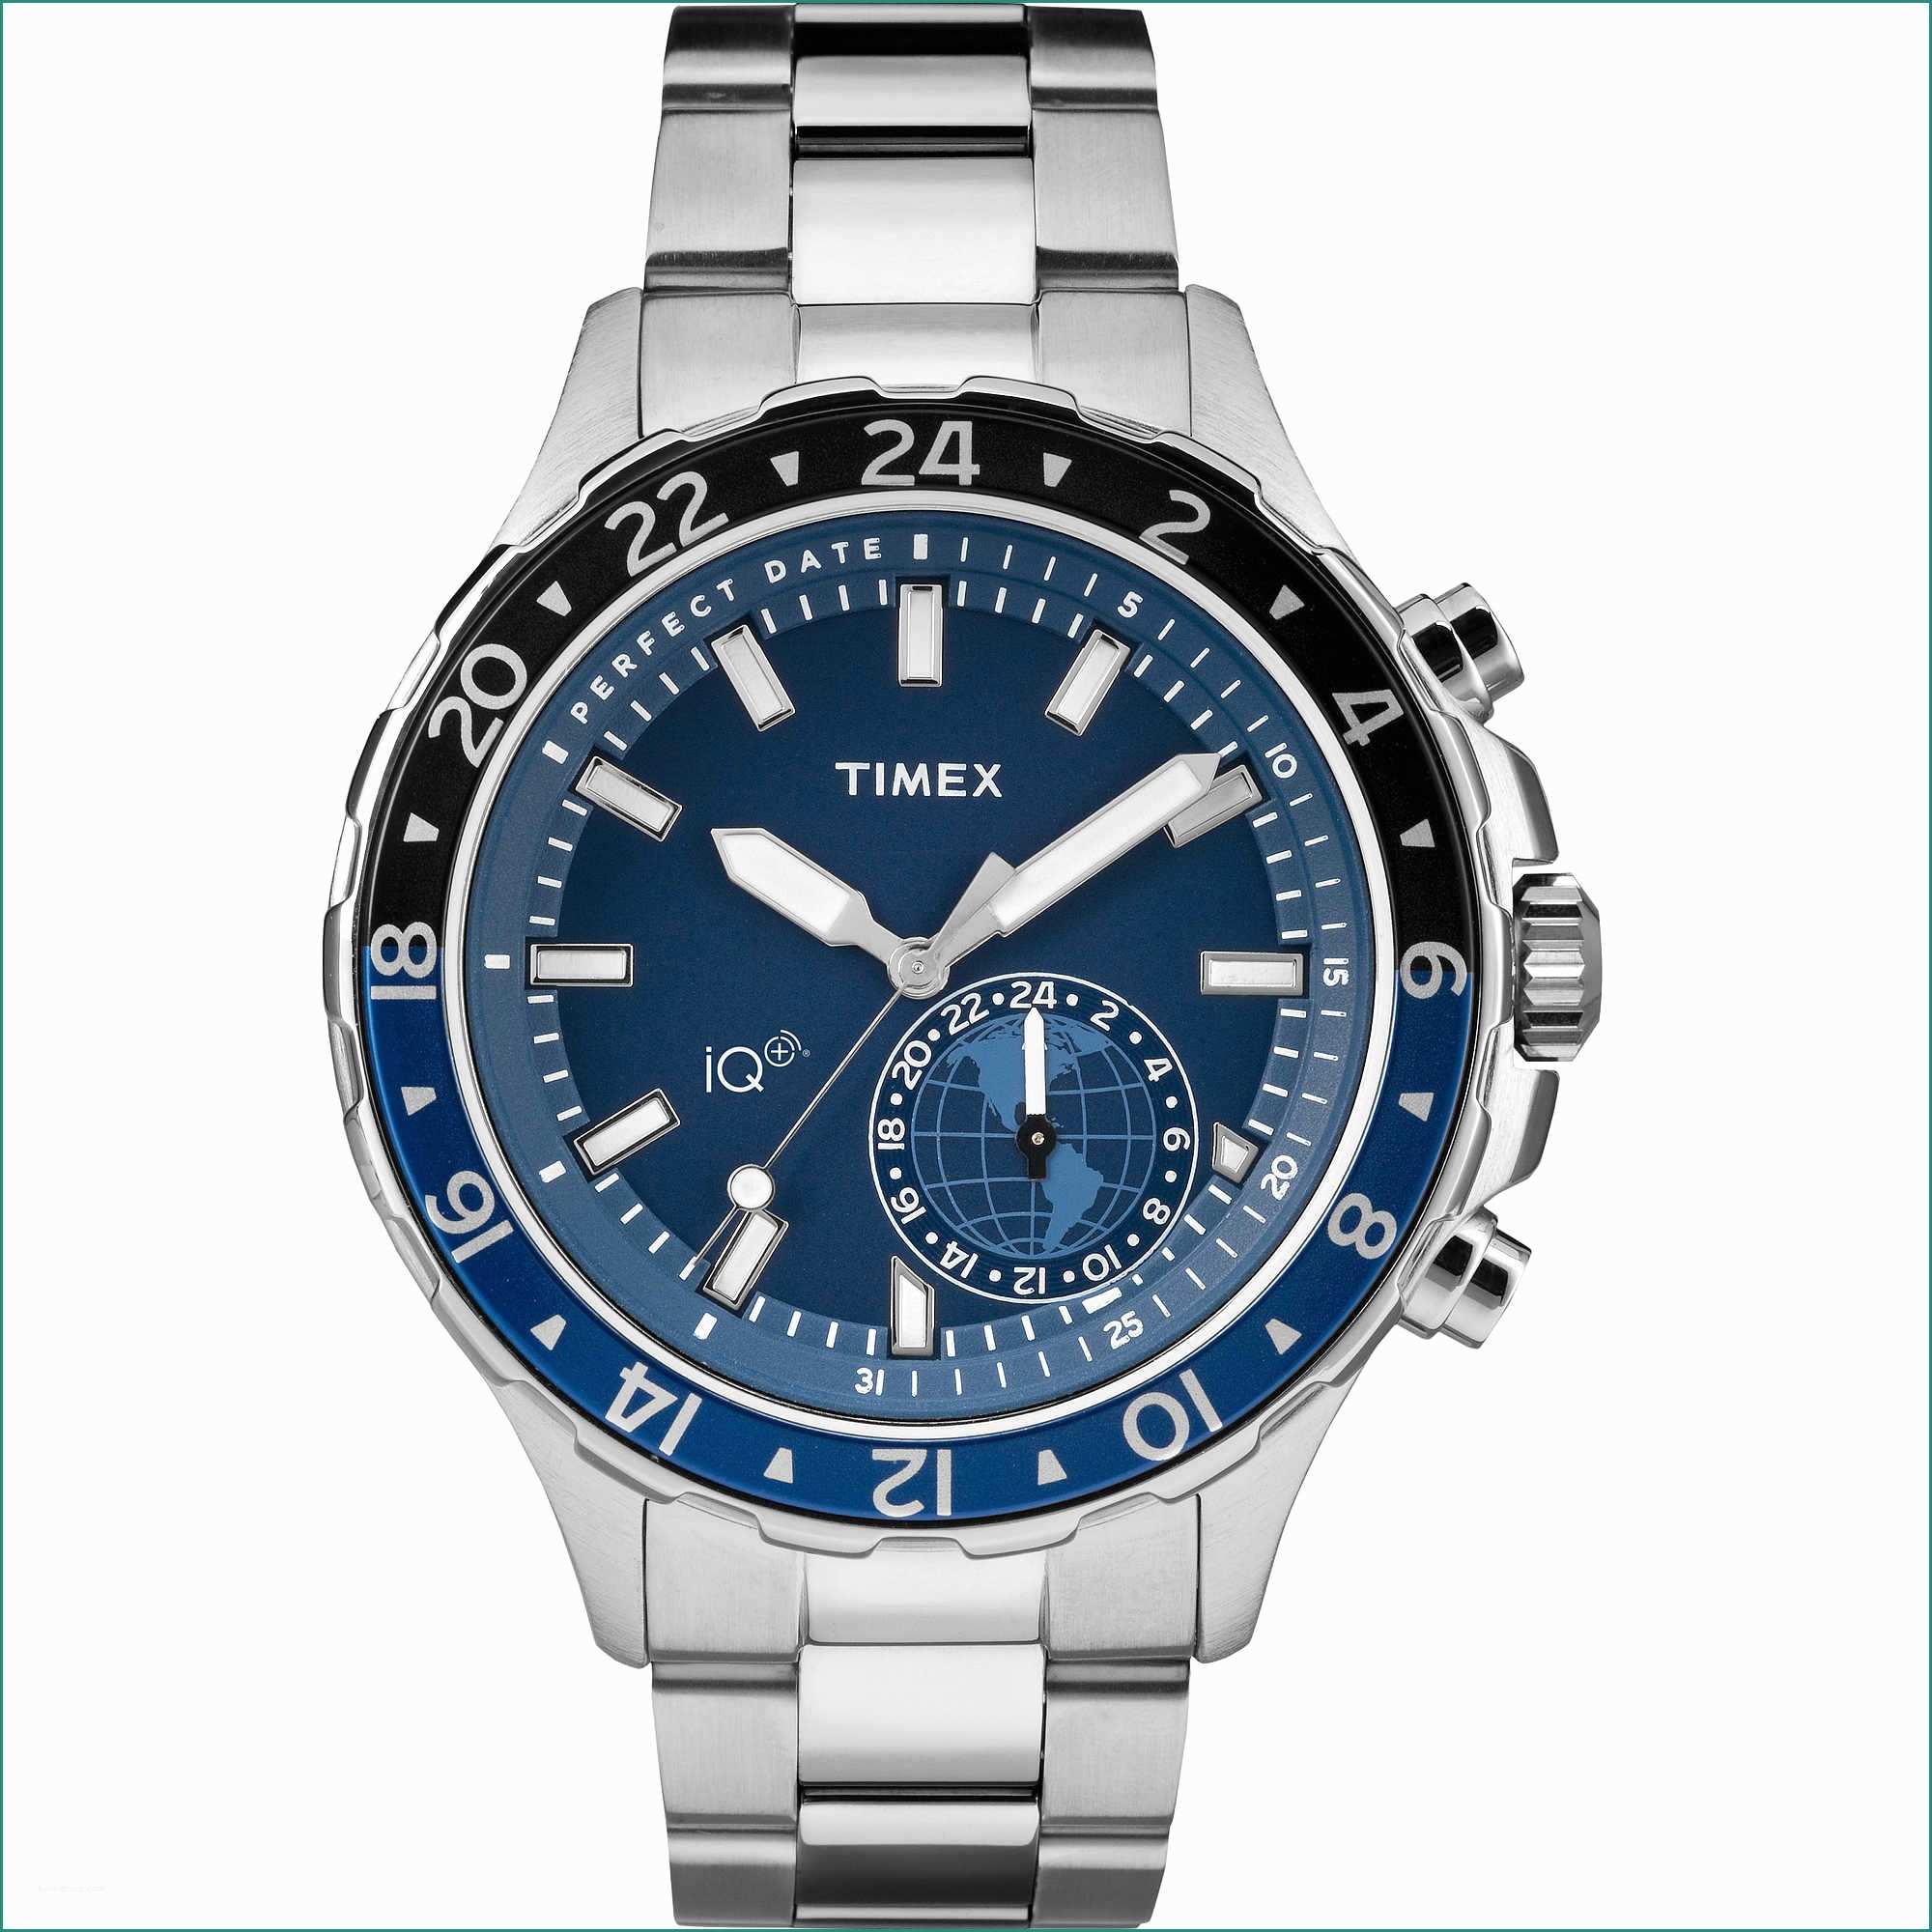 Regali Per Cresima Maschio E orologio Smartwatch Uomo Timex Iq Tw2r Smartwatches Timex